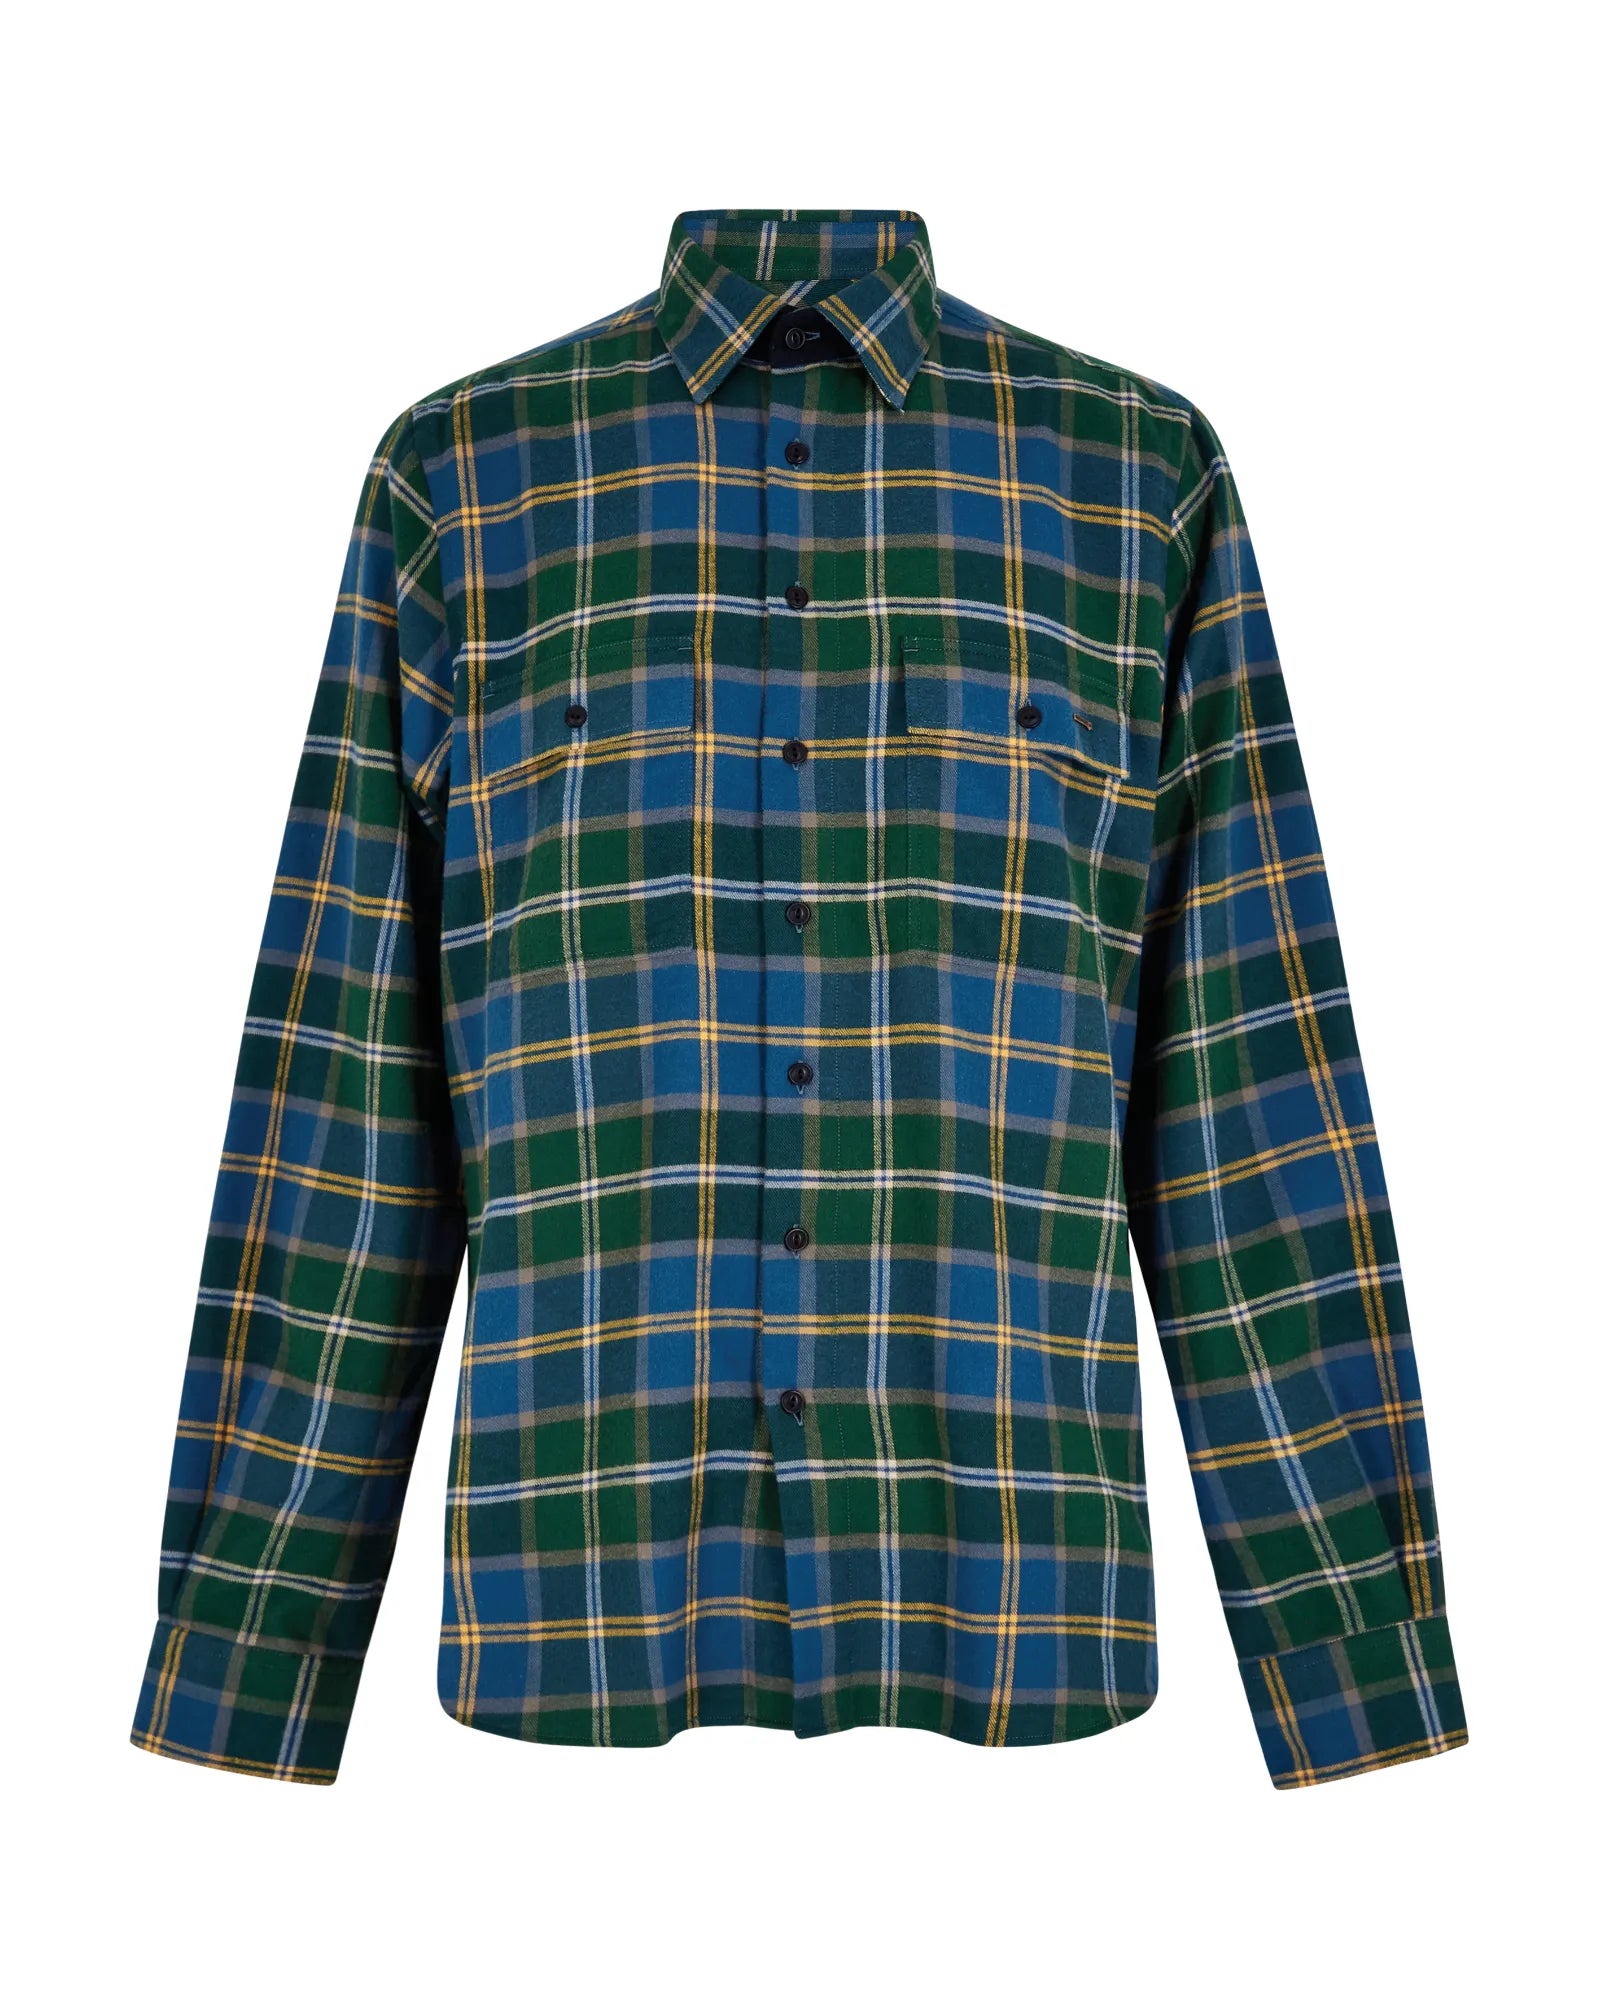 Shelbourne Check Flannel Shirt - Verdigris